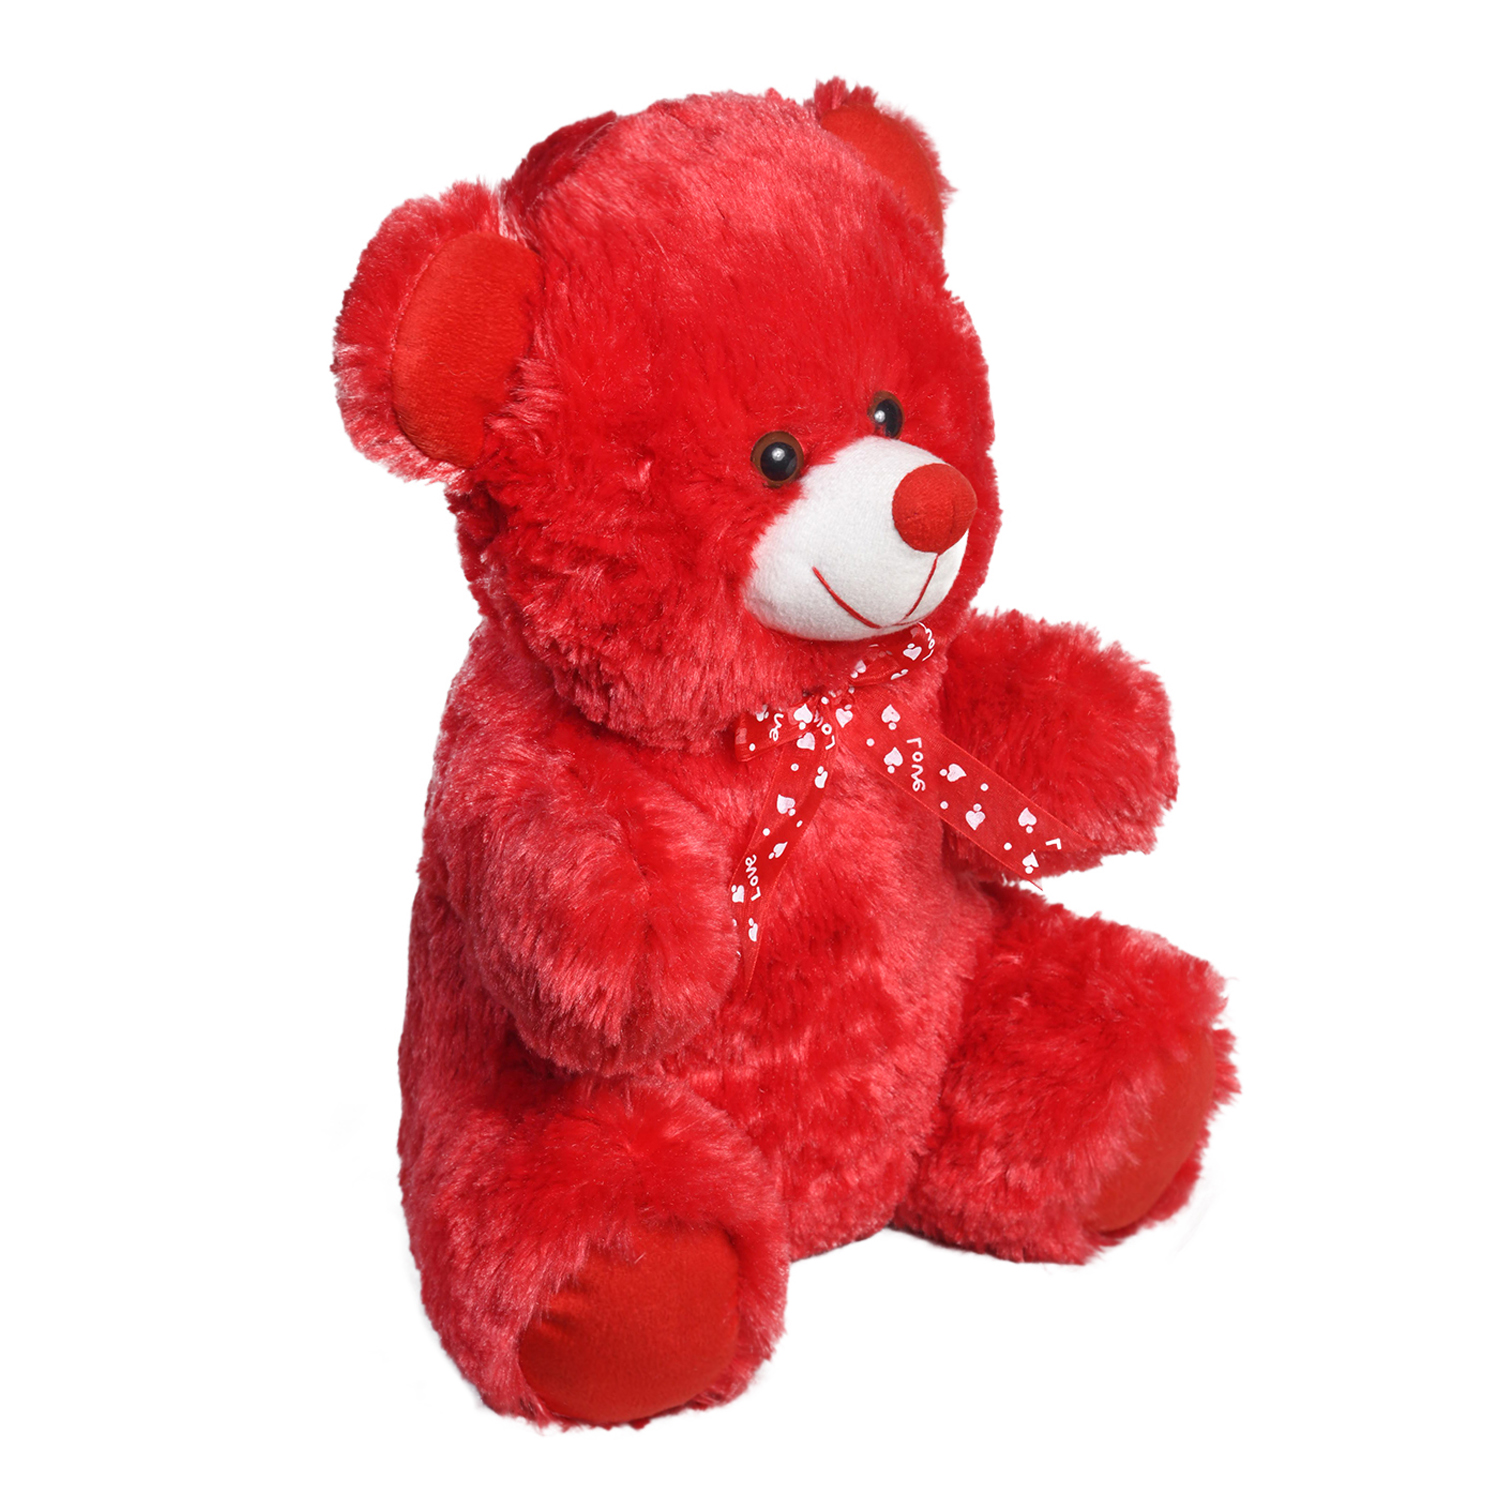 Ultra Cuddly Sitting Red Stuffed Teddy Bear Soft Toy Valentine Gift 15 Inch